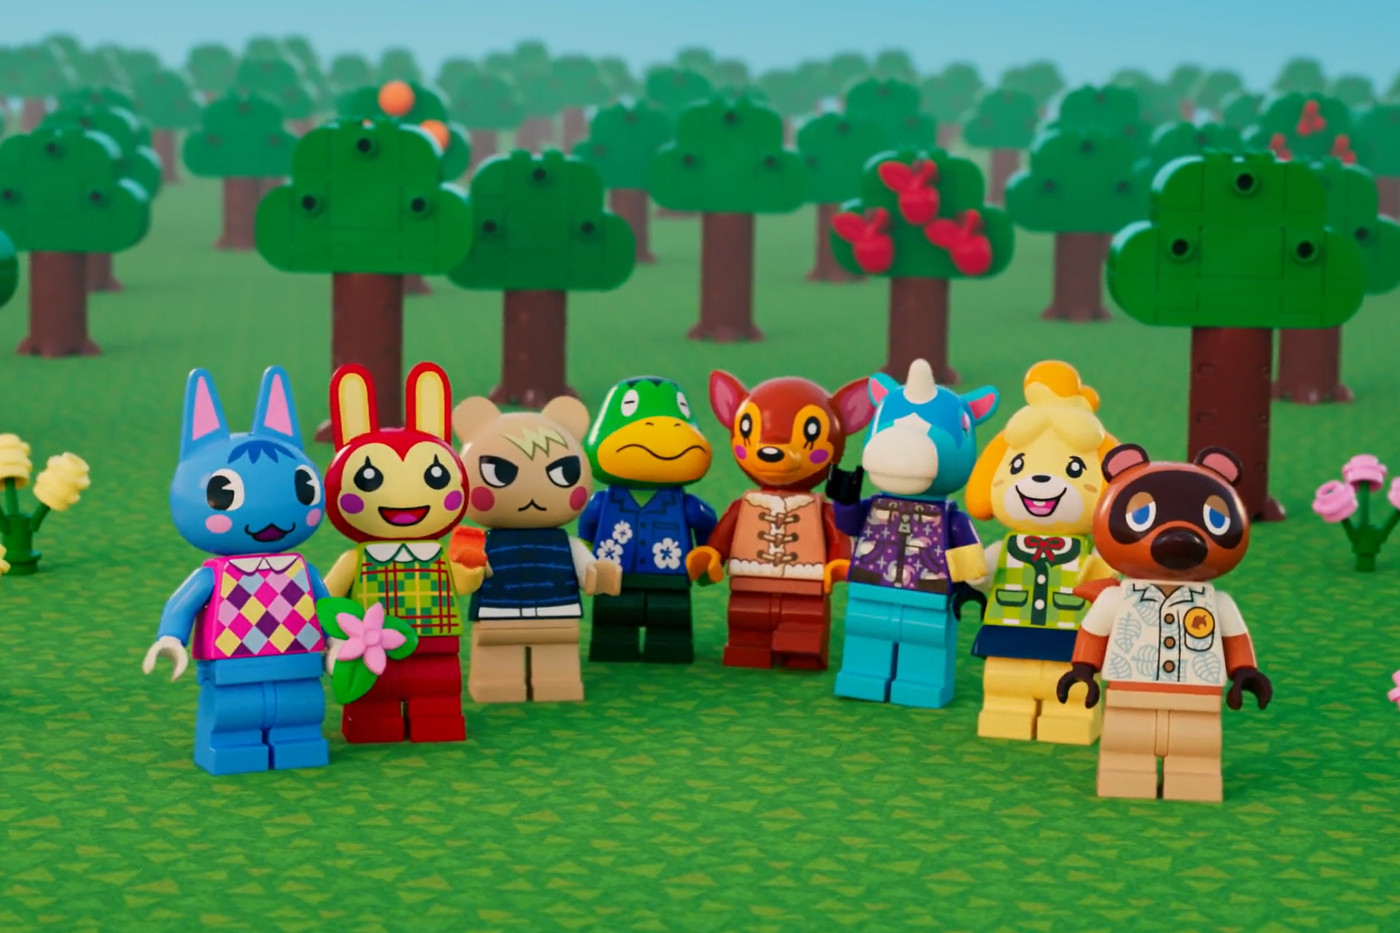 Lego rivela i suoi primi set di Animal Crossing, completi di Tom Nook